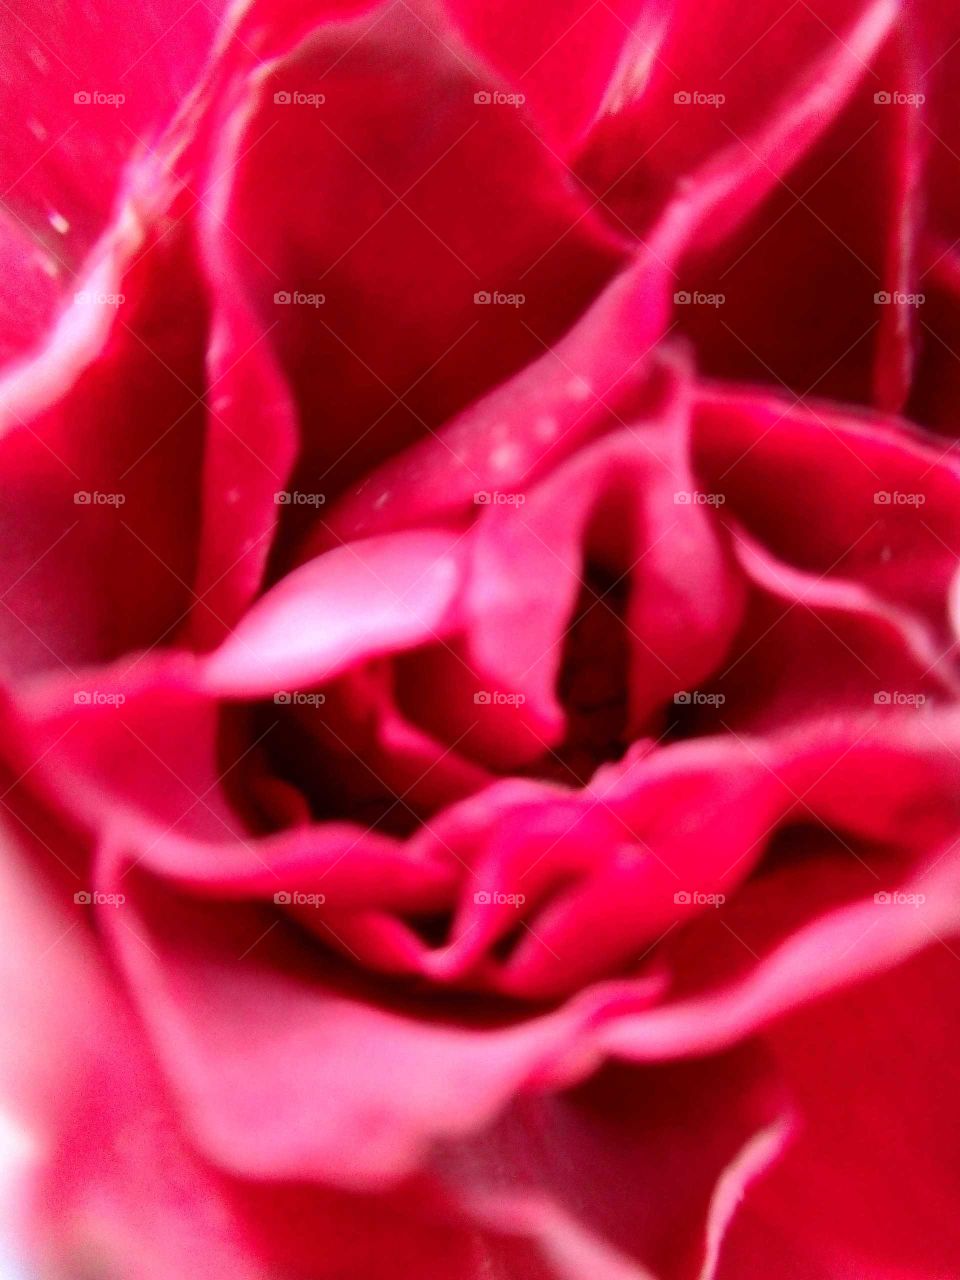 Rose petals close up